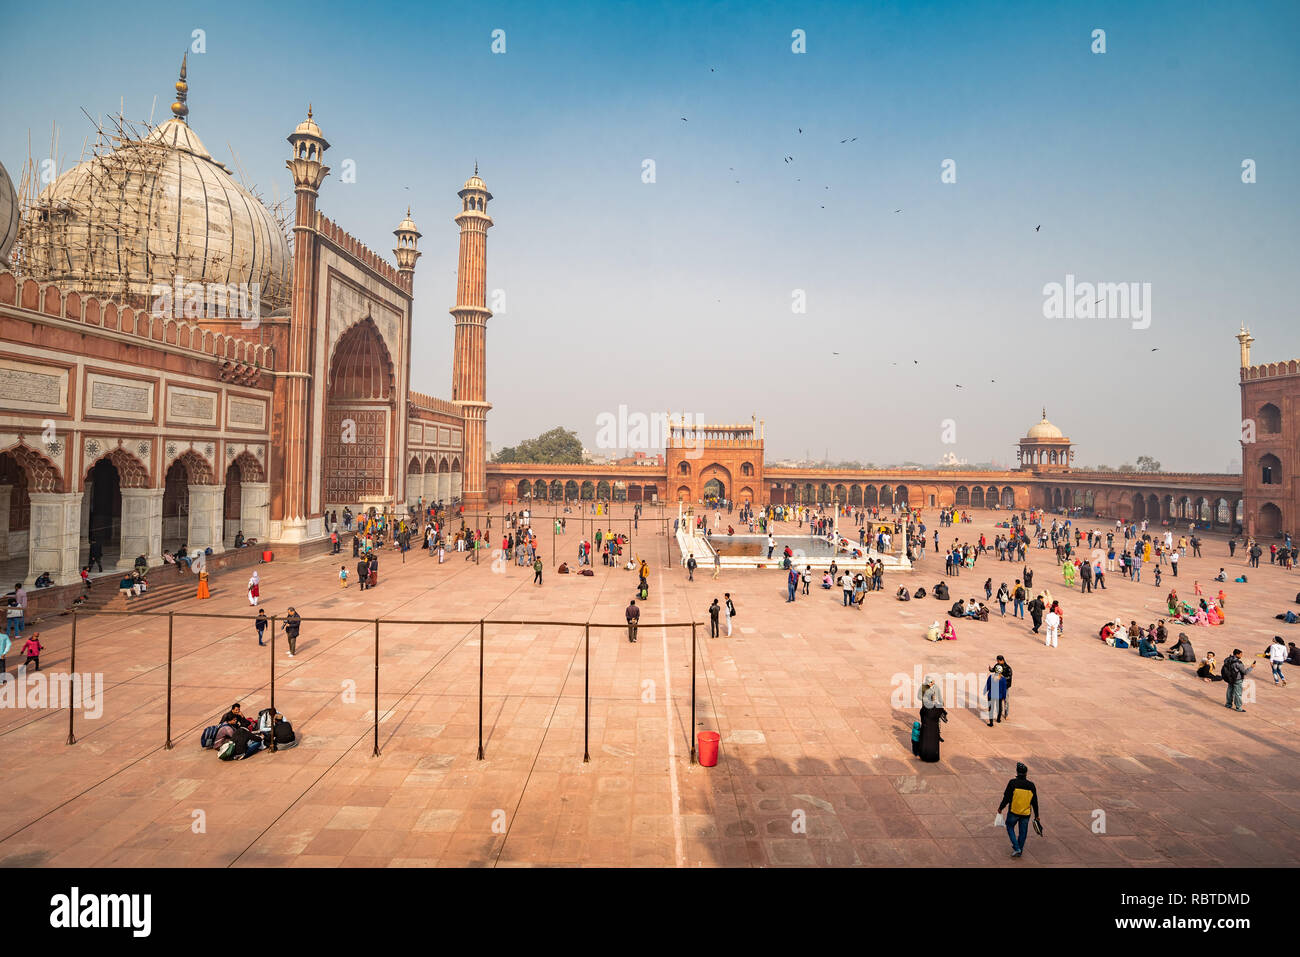 La cour principale dans Jama Masjid - un très célèbre mosquée de Delhi, Inde Banque D'Images